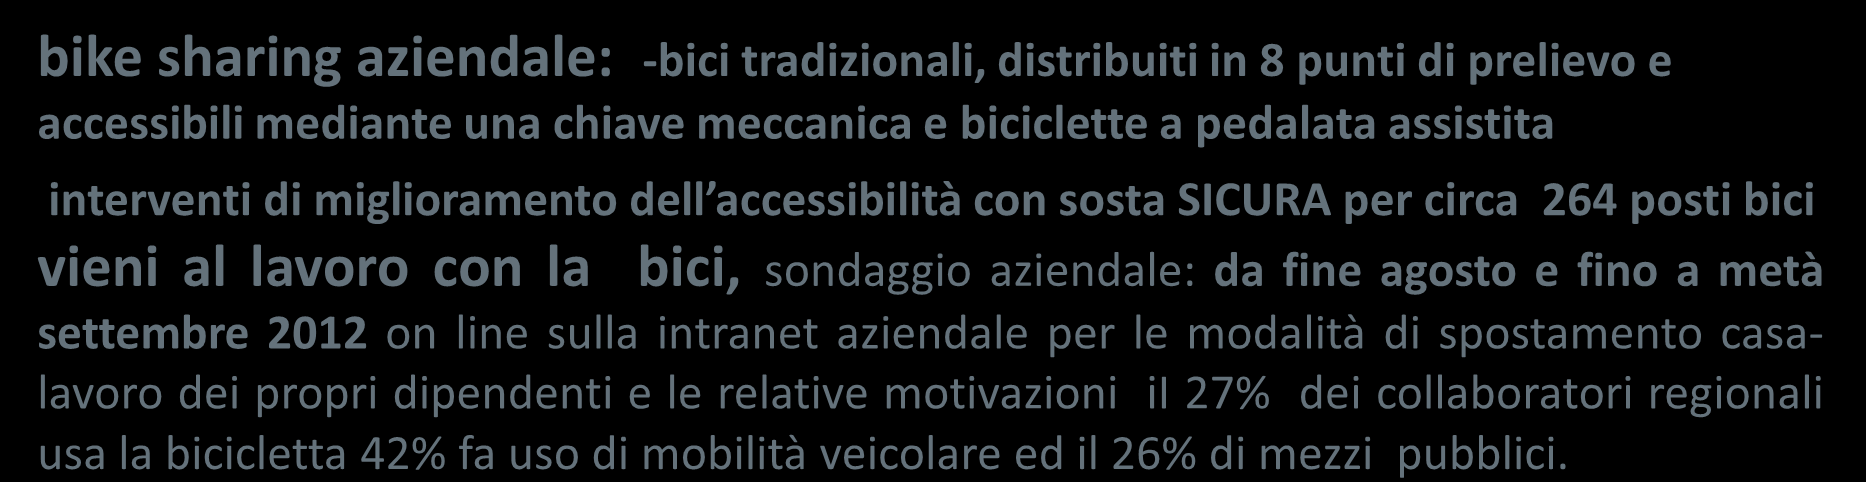 azioni regionali: mobility managment aziendale bike sharing aziendale: -bici tradizionali, distribuiti in 8 punti di prelievo e accessibili mediante una